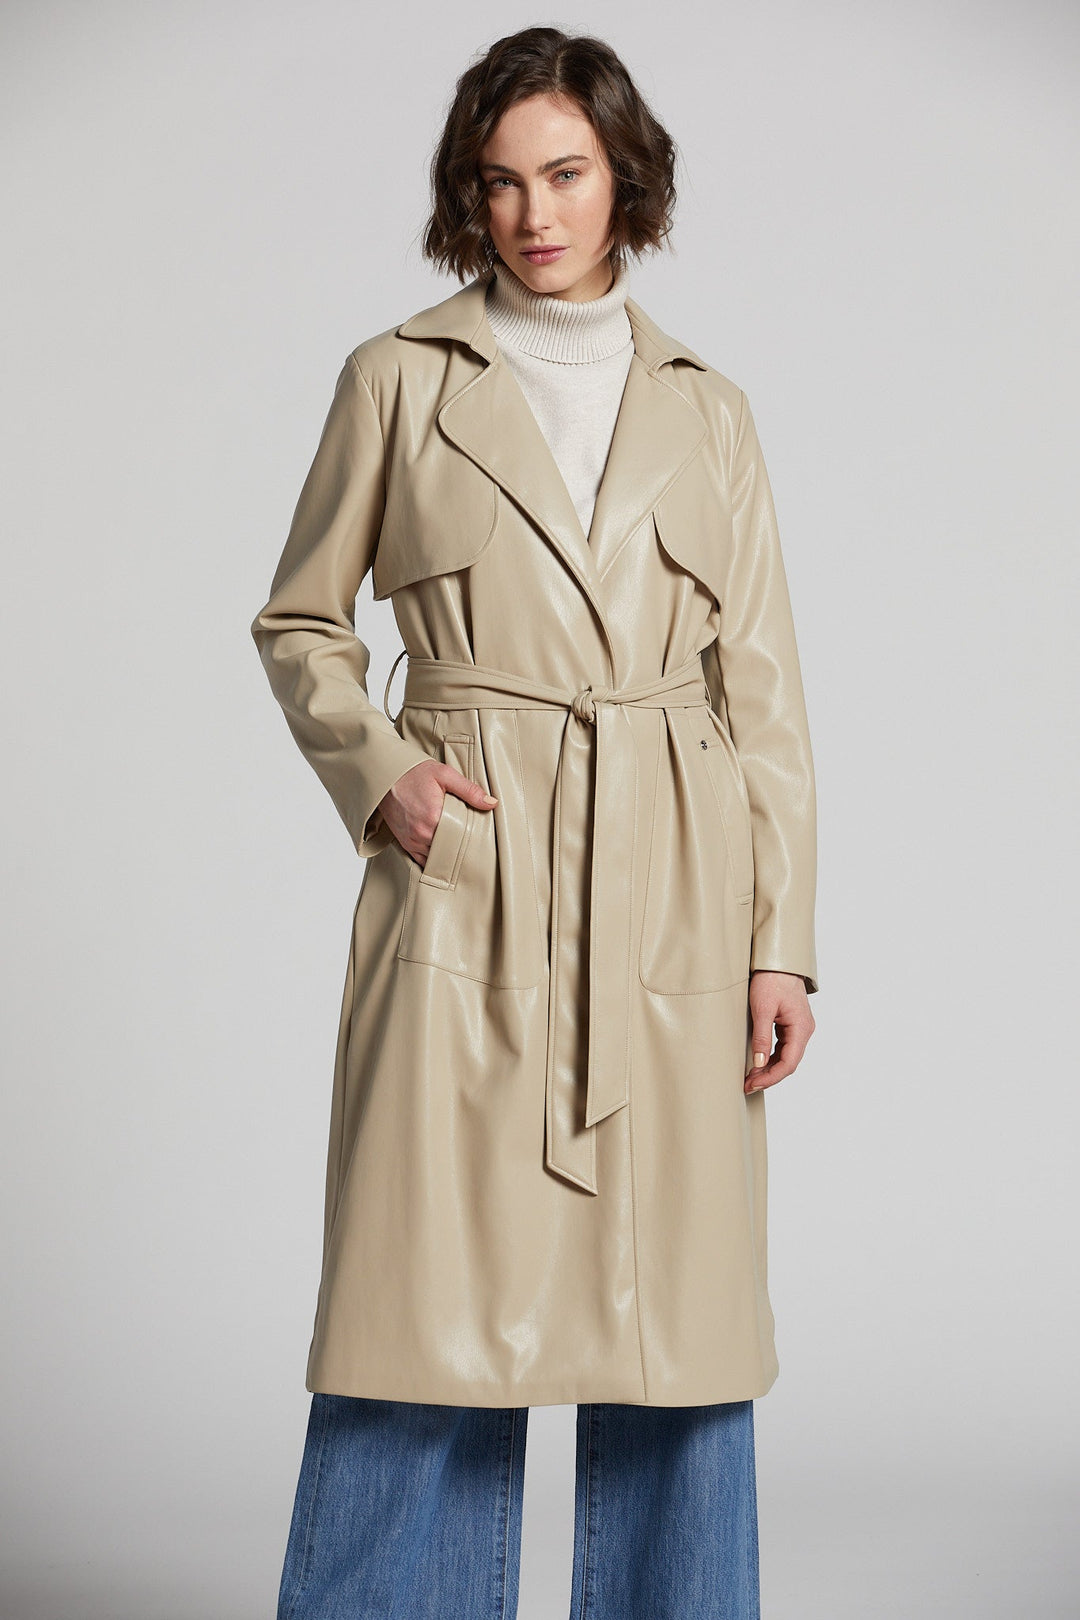 Adroit Atelier Nina Faux Leather Wrap Coat in Beige